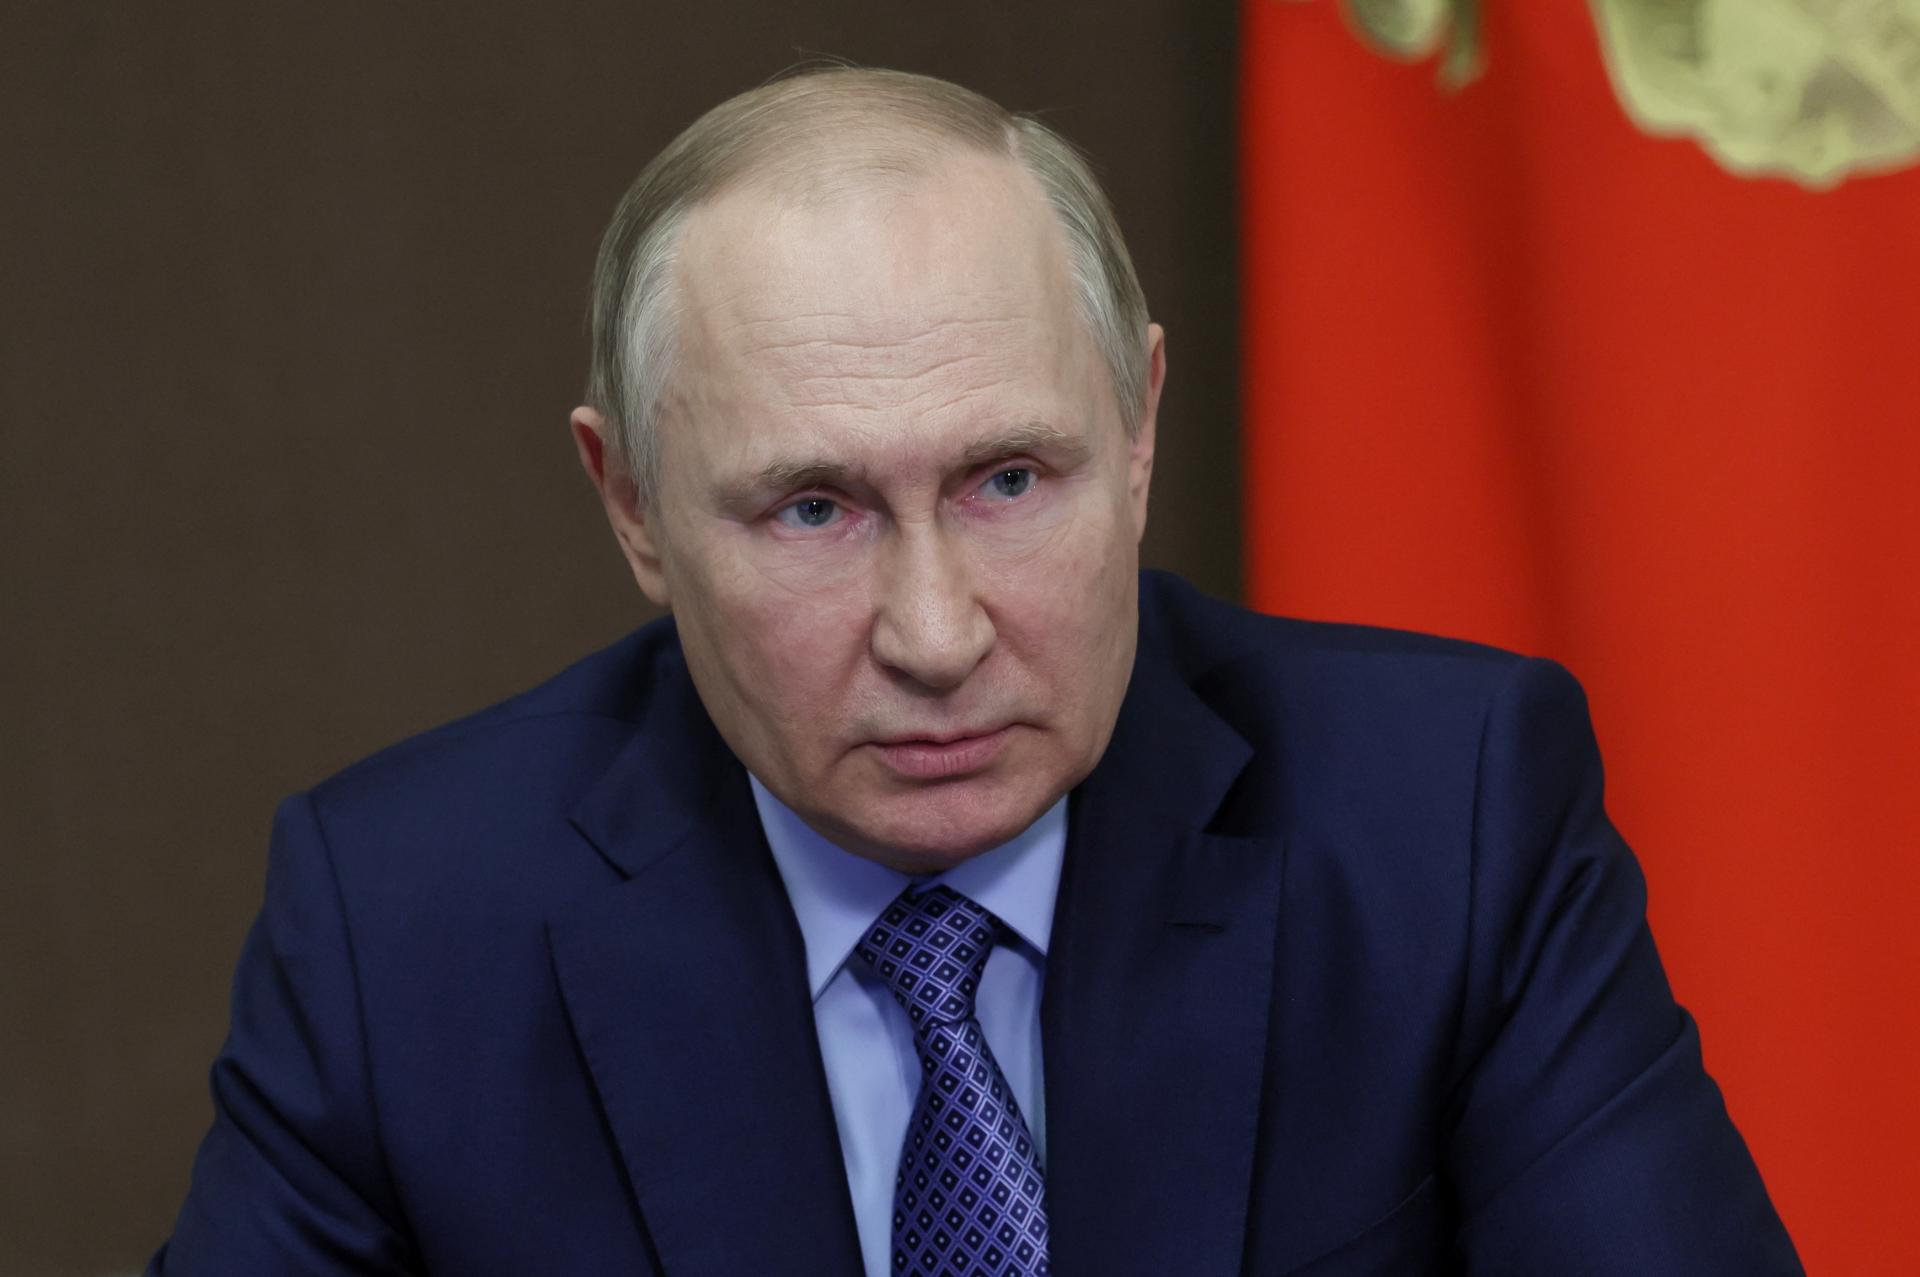 Putina vojna oslabila, ale jeho pád nie je na obzore, povedal západný činiteľ